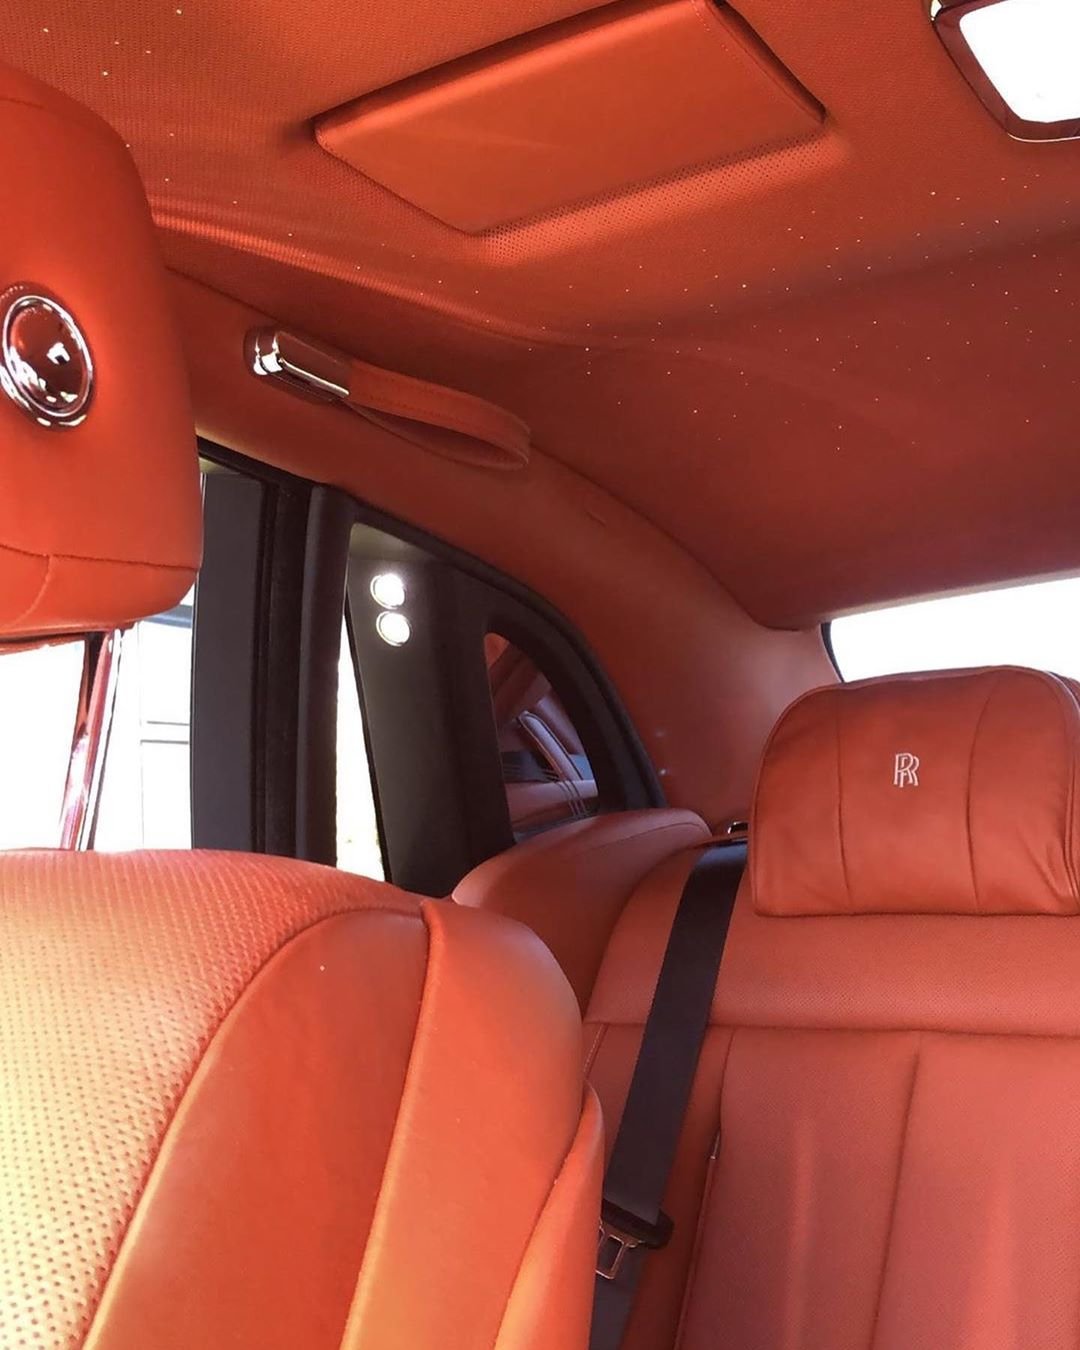 Кайли Дженнер показала свое роскошное авто за 450 тысяч долларов - фото 440482